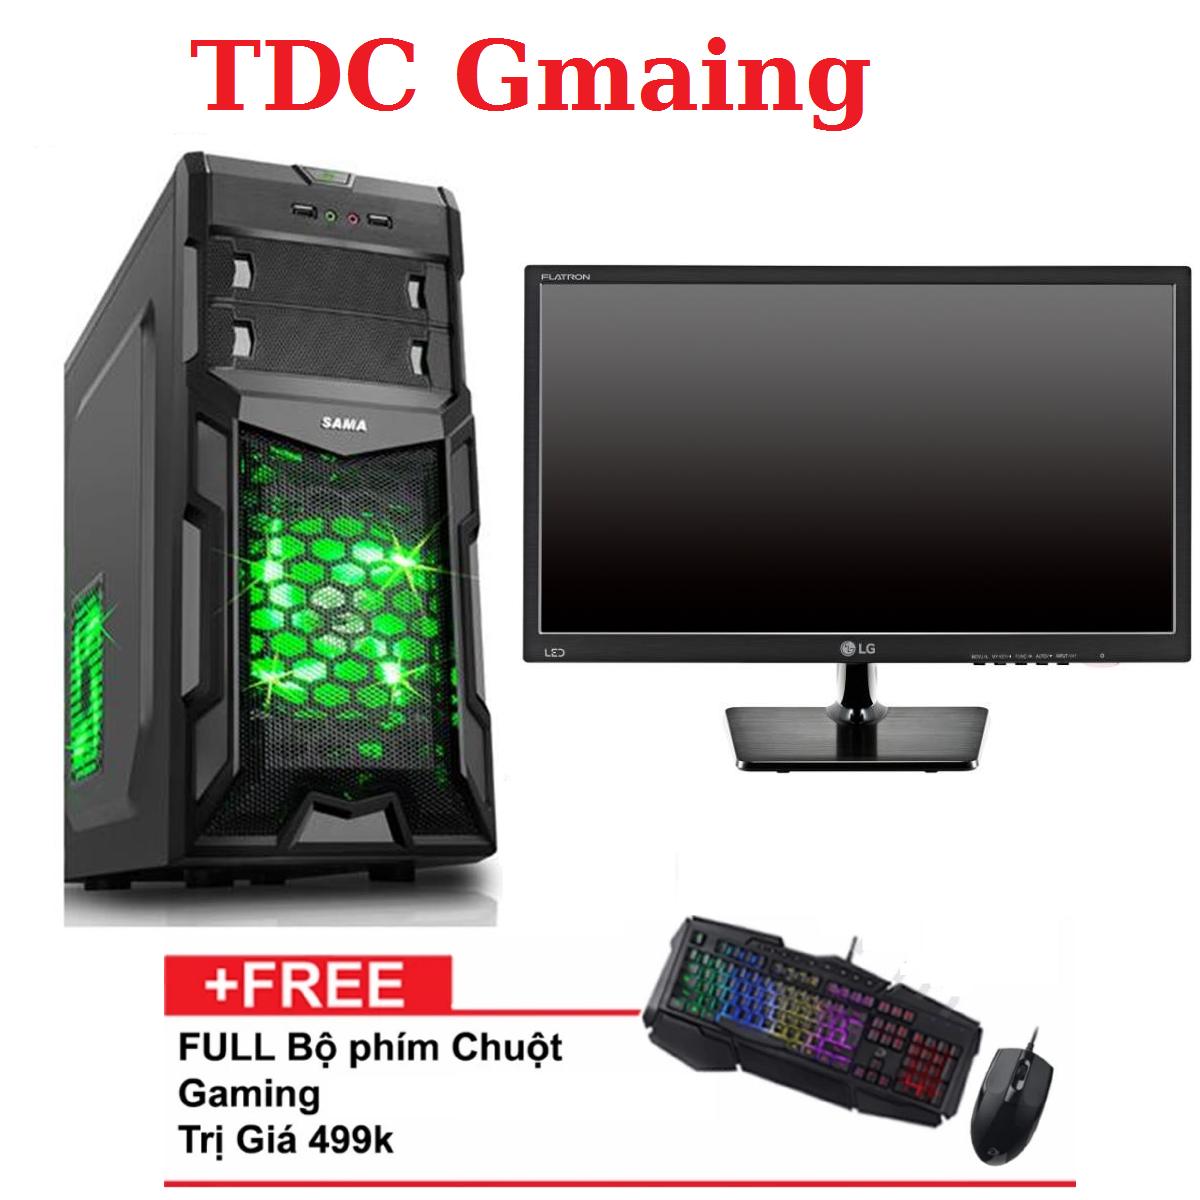 Máy tính game TDCGaming intel core i3 2100/ Ram 4gb/ Hdd 250gb , Màn hình LG 19 inch - Tặng...